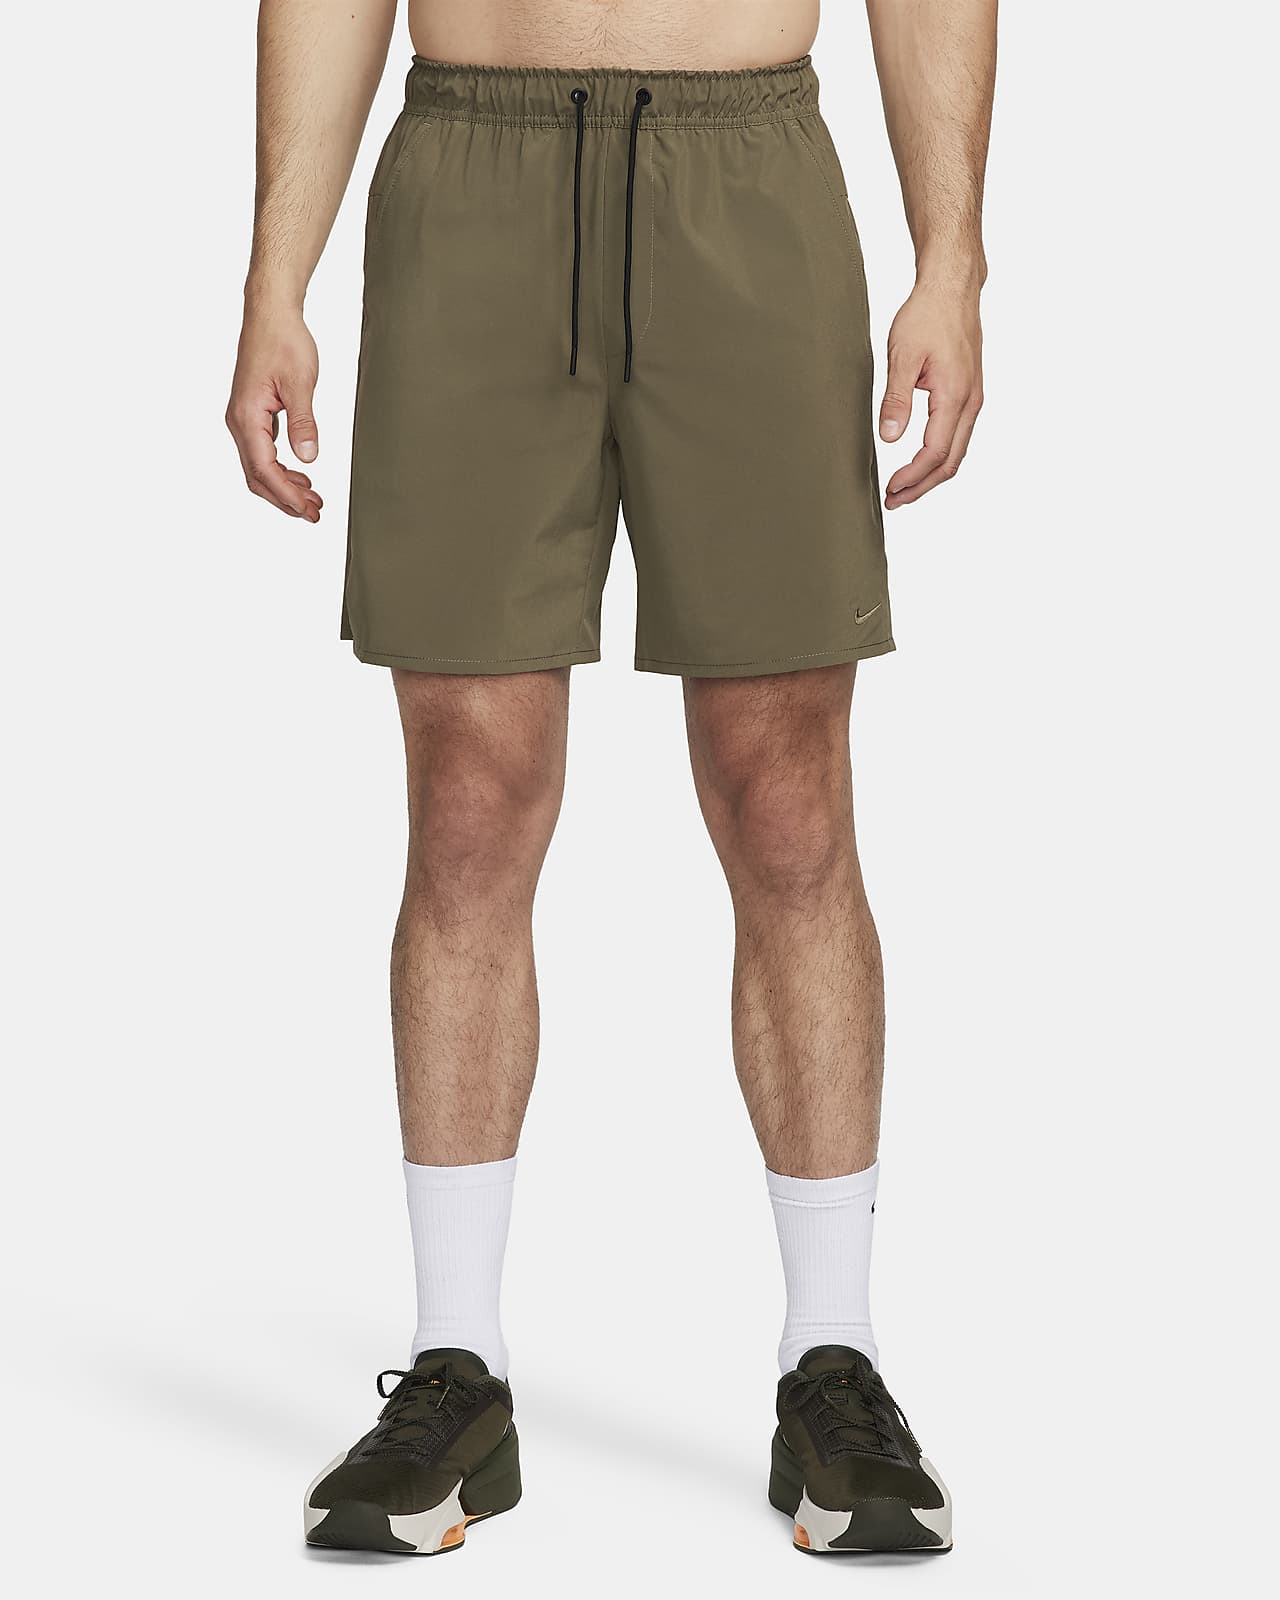 Nike Unlimited Pantalons curts Dri-FIT versàtils sense folre de 18 cm - Home